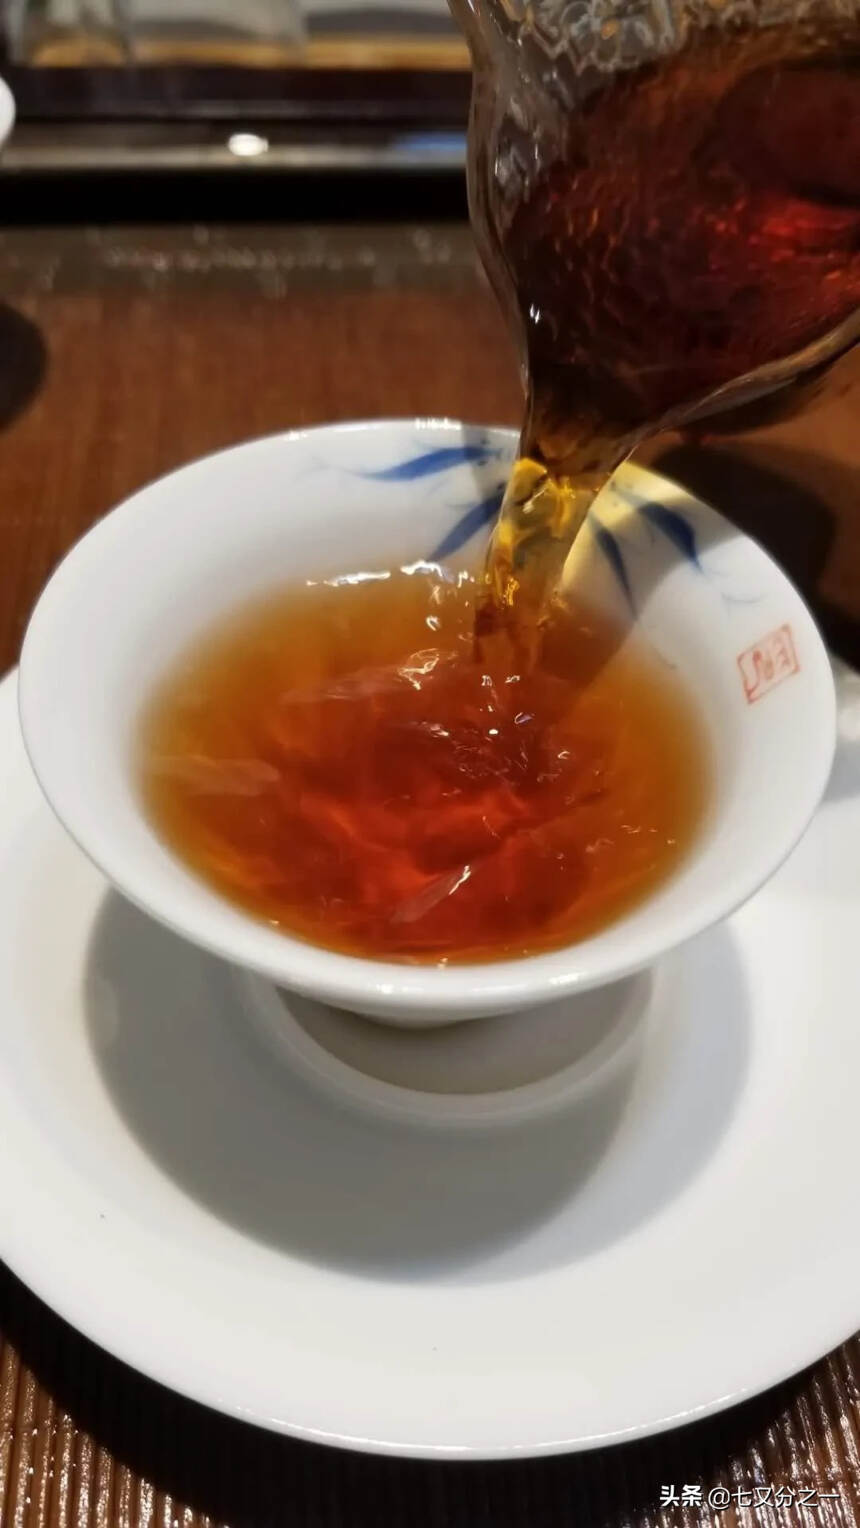 经典款好茶
98年云南下关茶厂出品 口感细腻柔软 甜